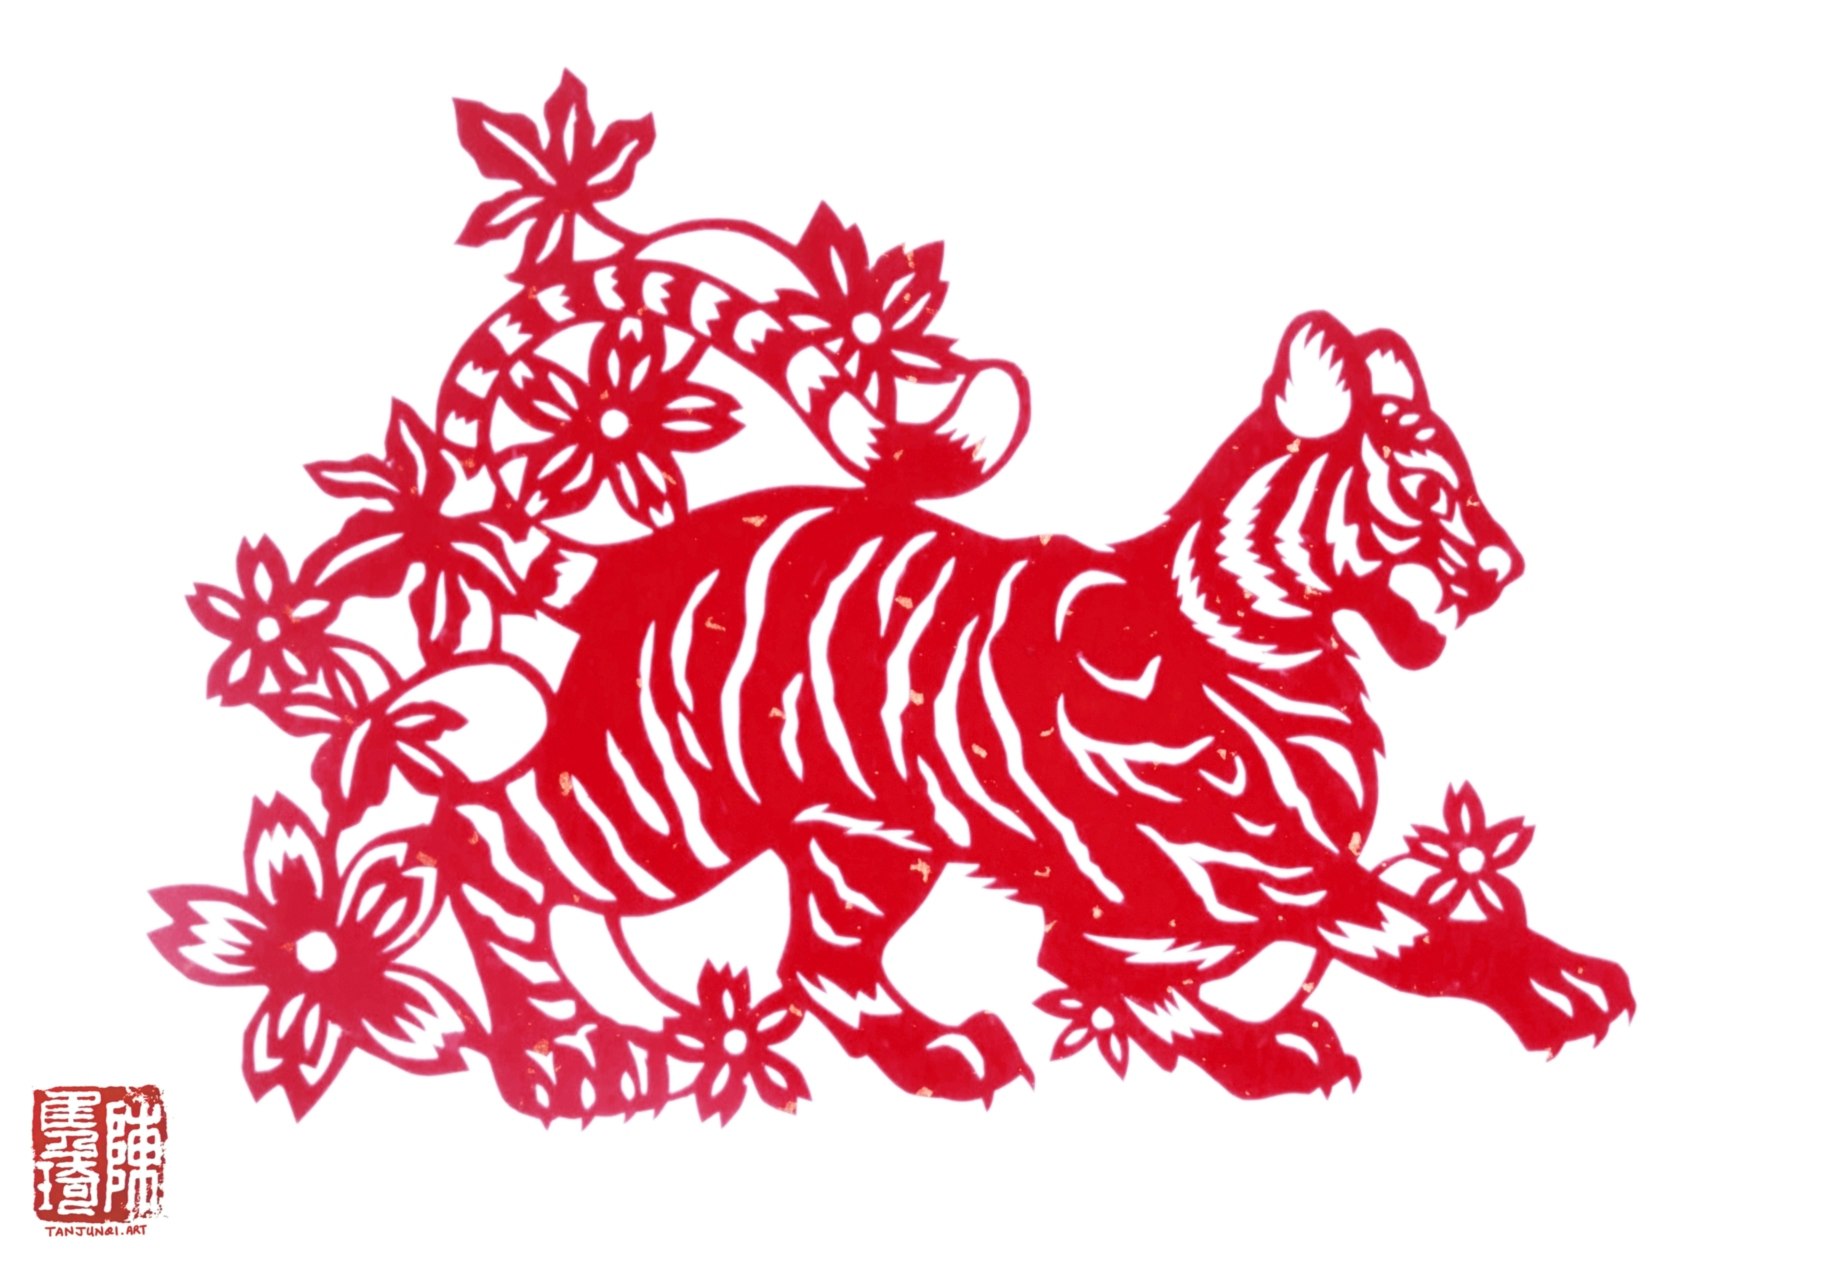 往前走行的老虎剪纸。老虎的周围绽放着红花。